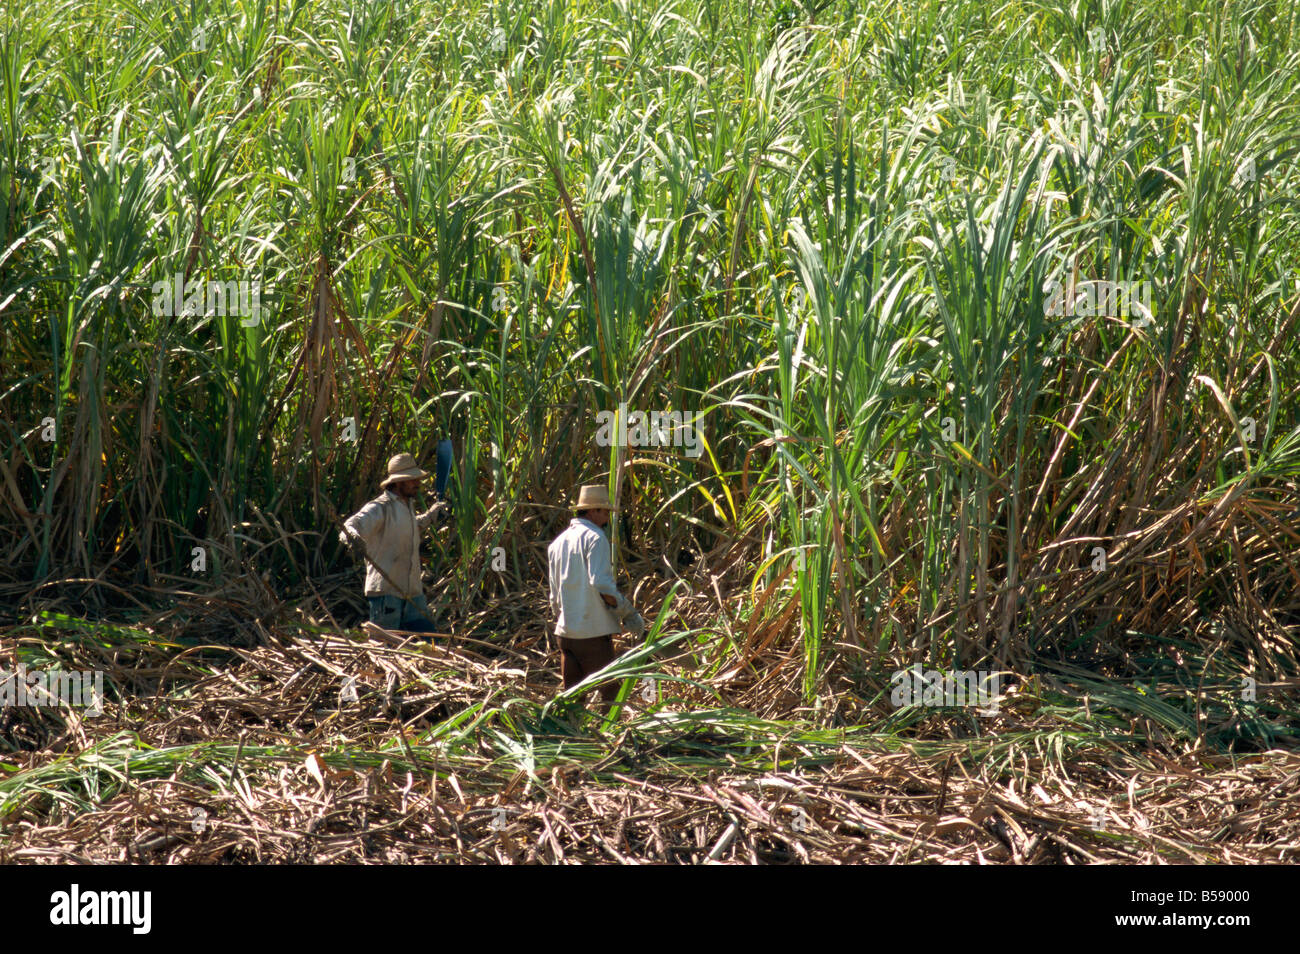 Harvesting sugar cane by hand Valle de los Ingenios Trinidad Cuba West Indies Central America Stock Photo